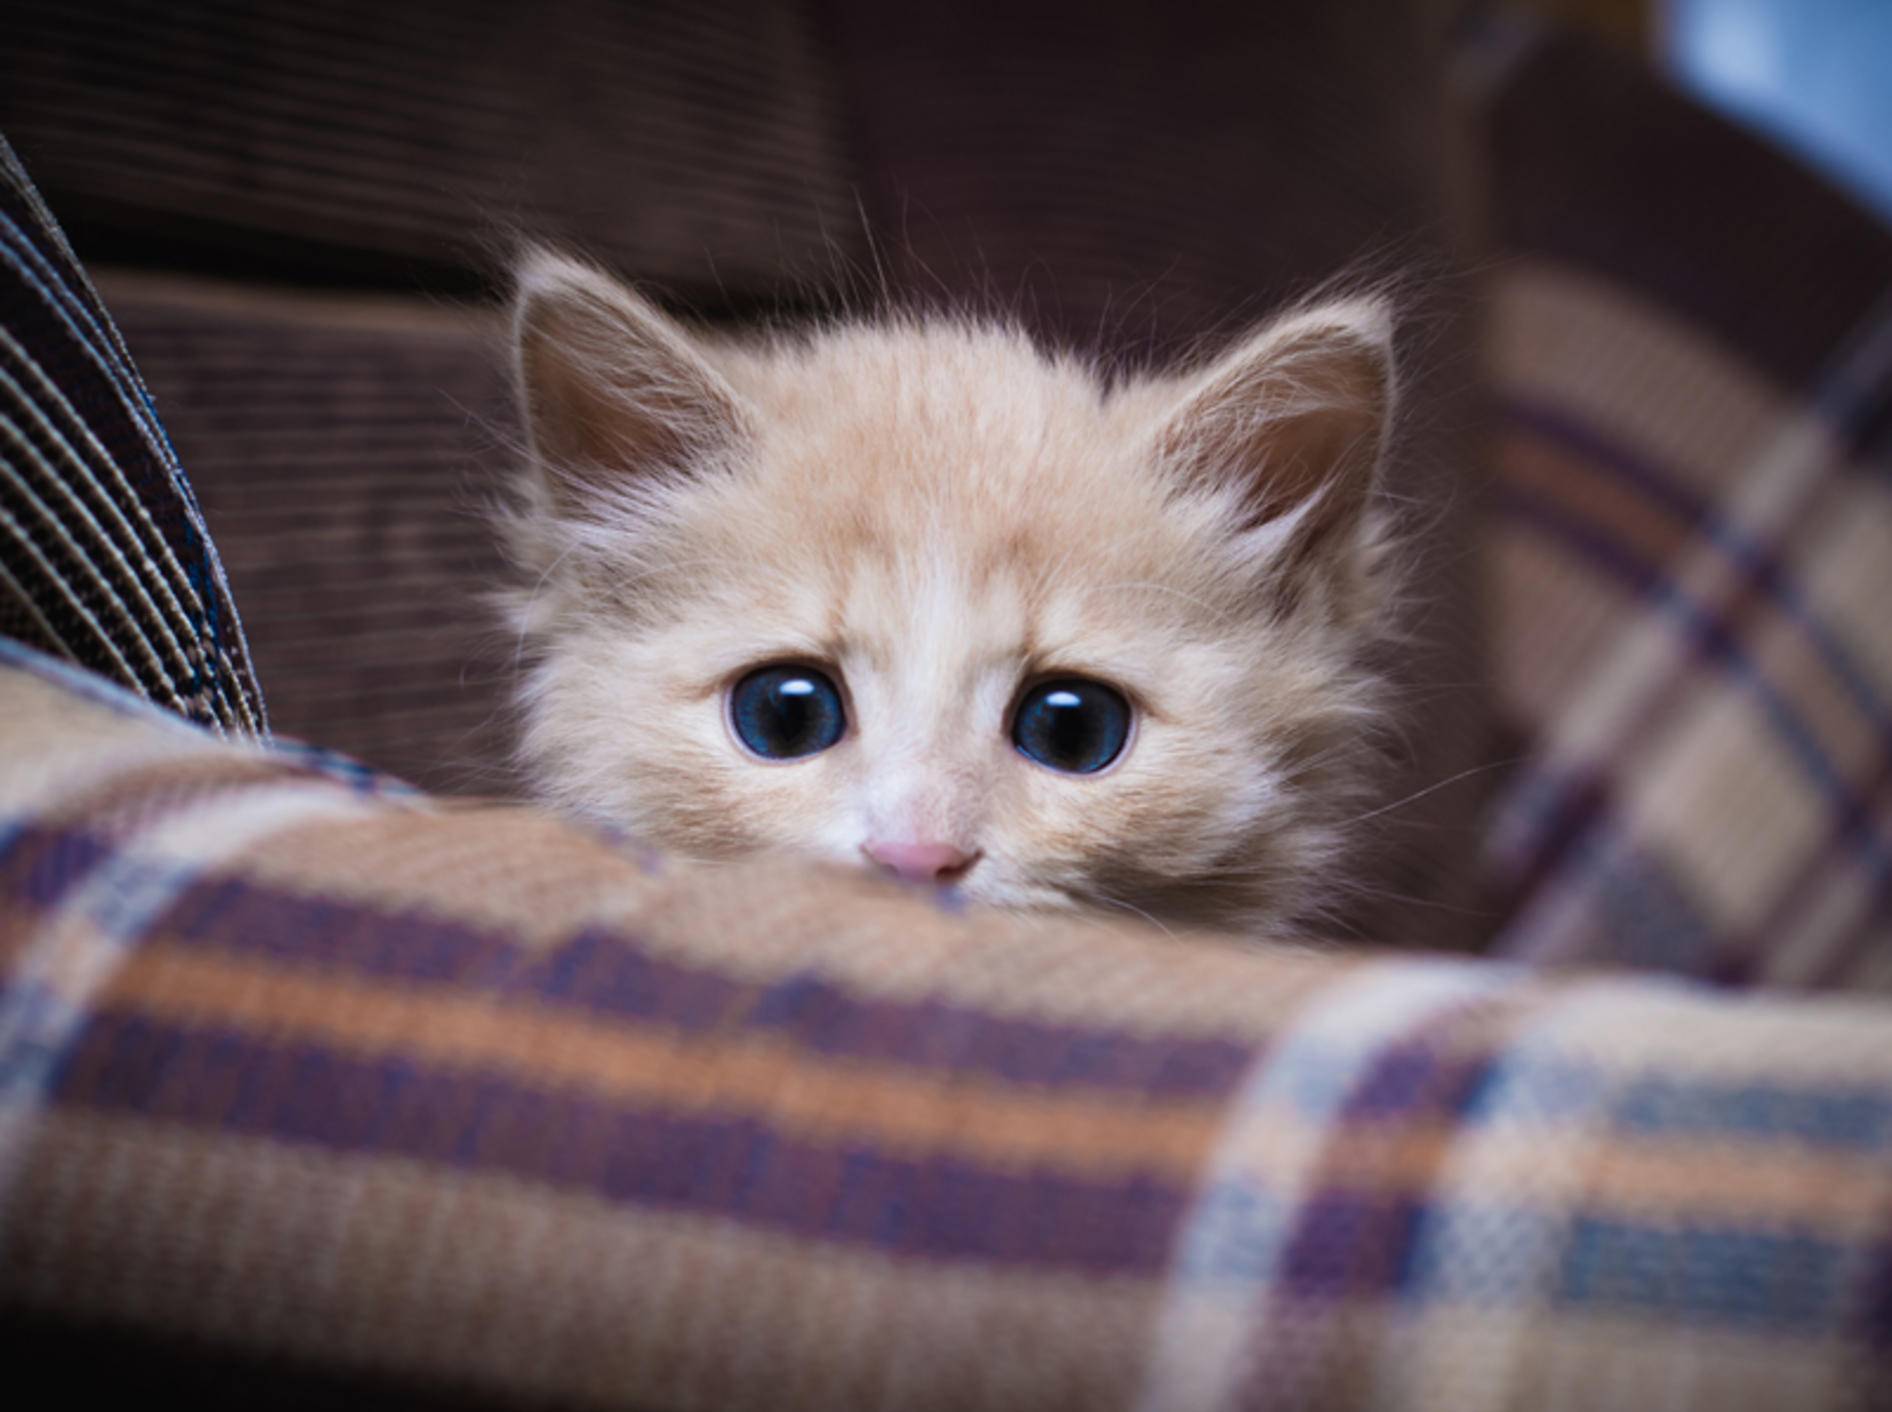 Mit Gelassenheit können Sie eine verängstigte Katze beruhigen – Bild: Shutterstock / Khamidulin Sergey